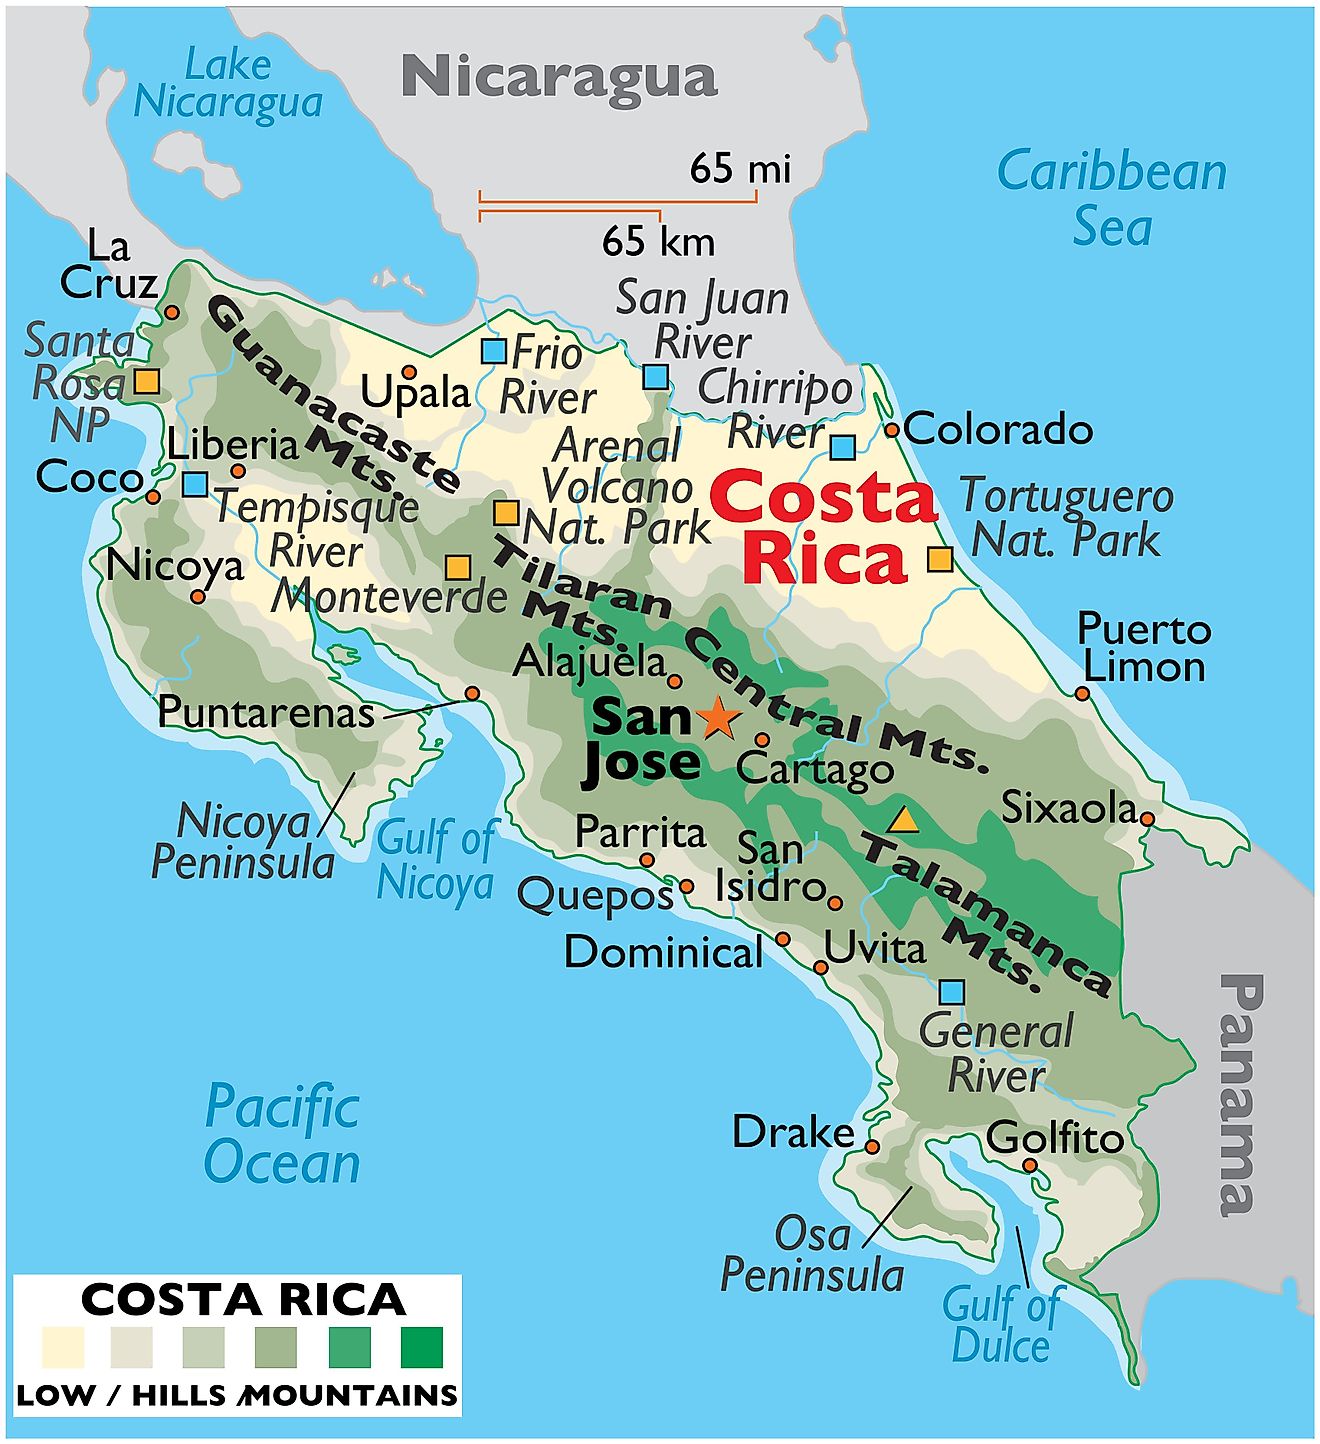 Mapa físico de Costa Rica que muestra el relieve, los principales ríos, las cadenas montañosas, el punto más alto, las ciudades importantes, las fronteras internacionales, etc.